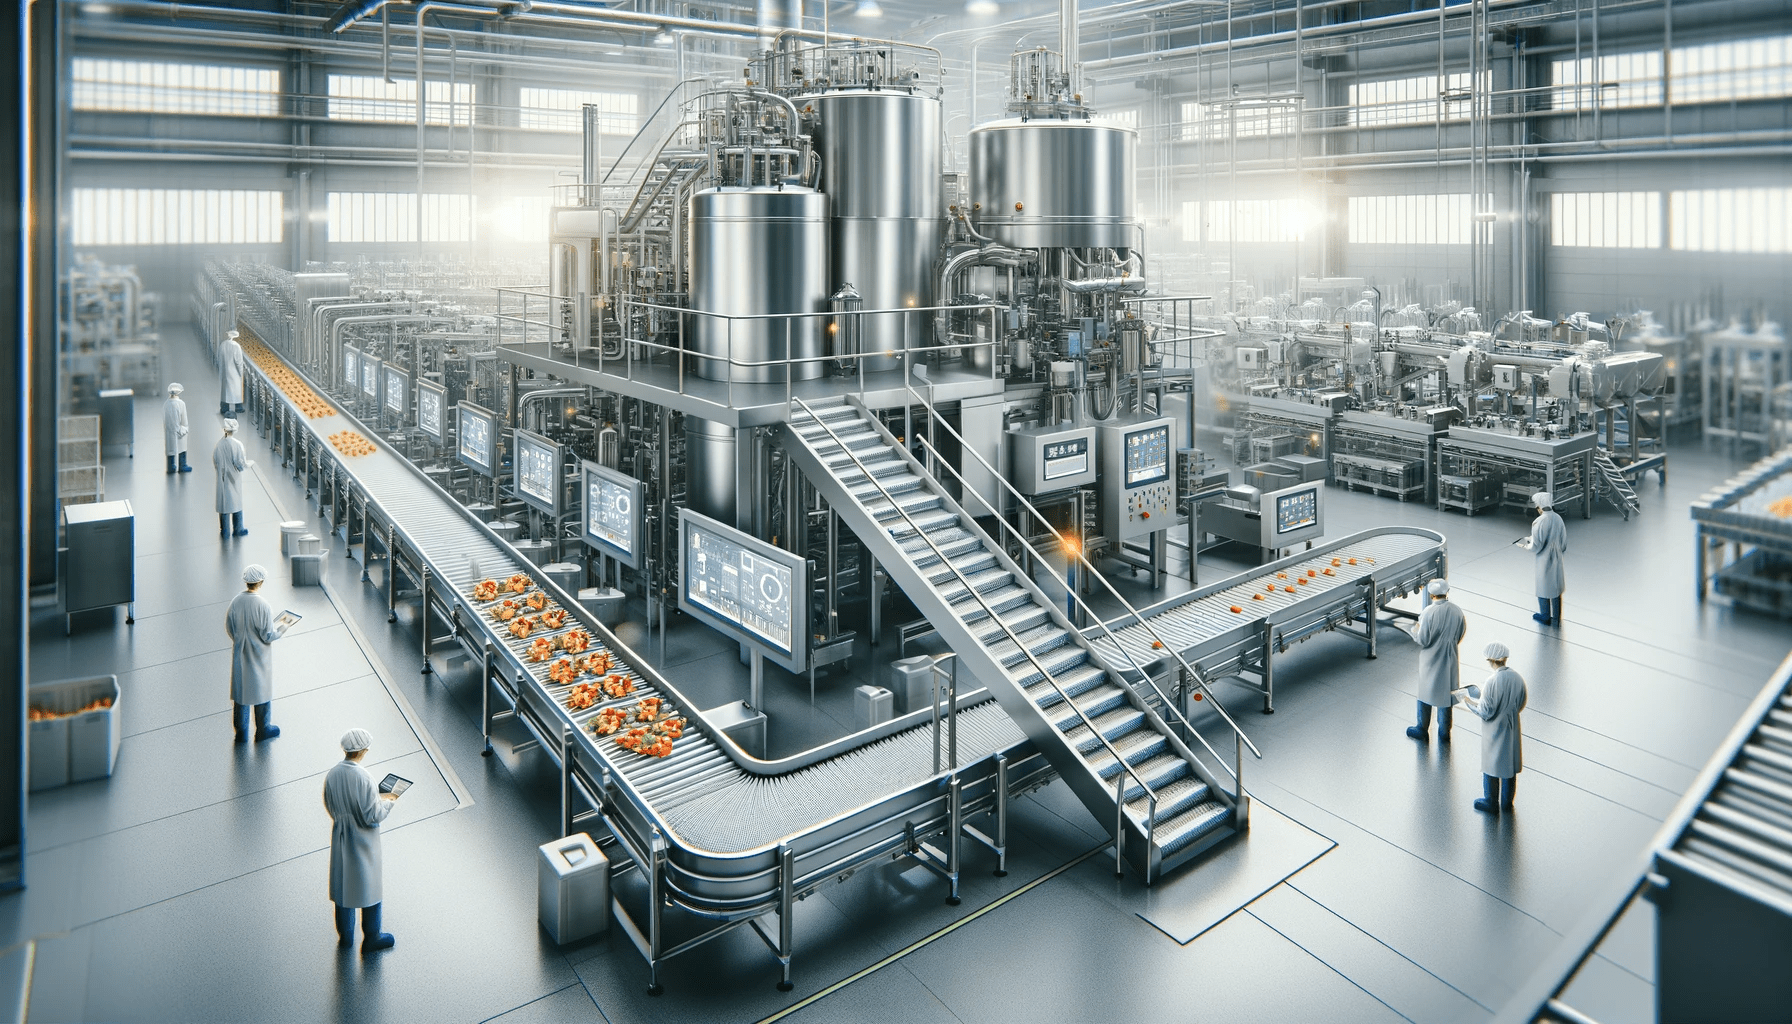 Un système de transformation alimentaire moderne dans un environnement industriel. L'image doit représenter une grande machinerie en acier inoxydable avec des bandes transporteuses.